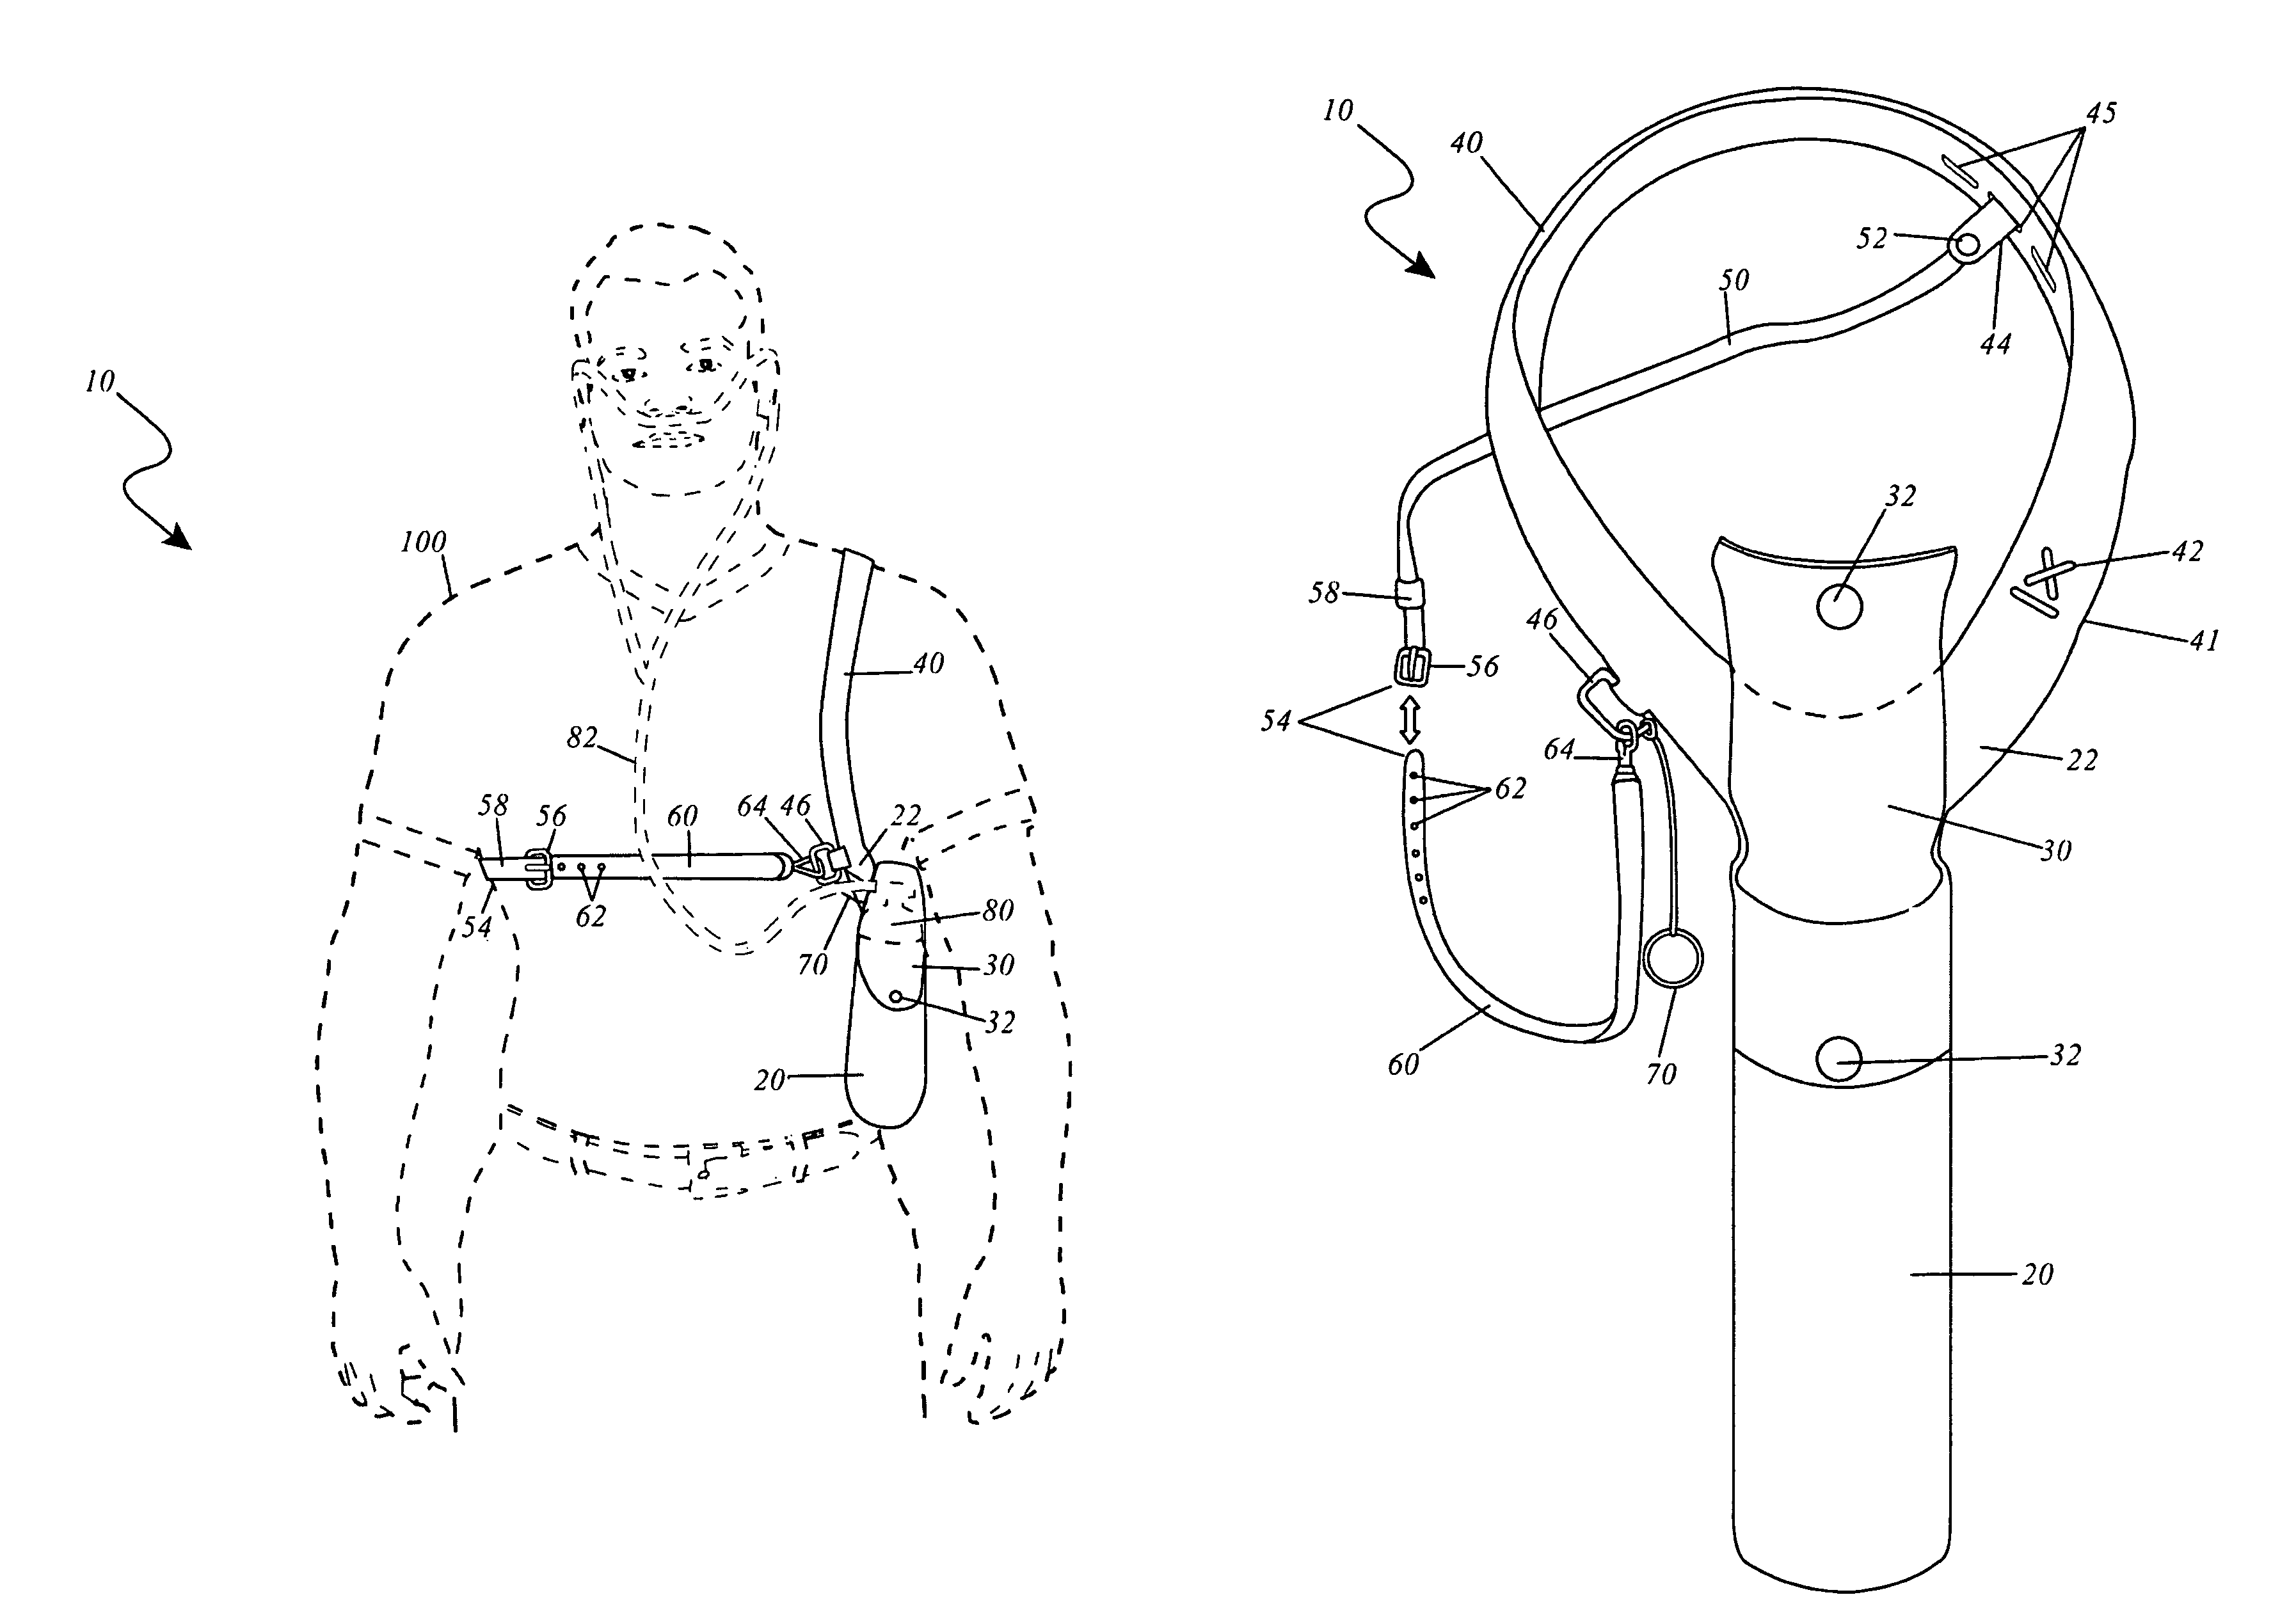 Shoulder holster for oxygen tanks